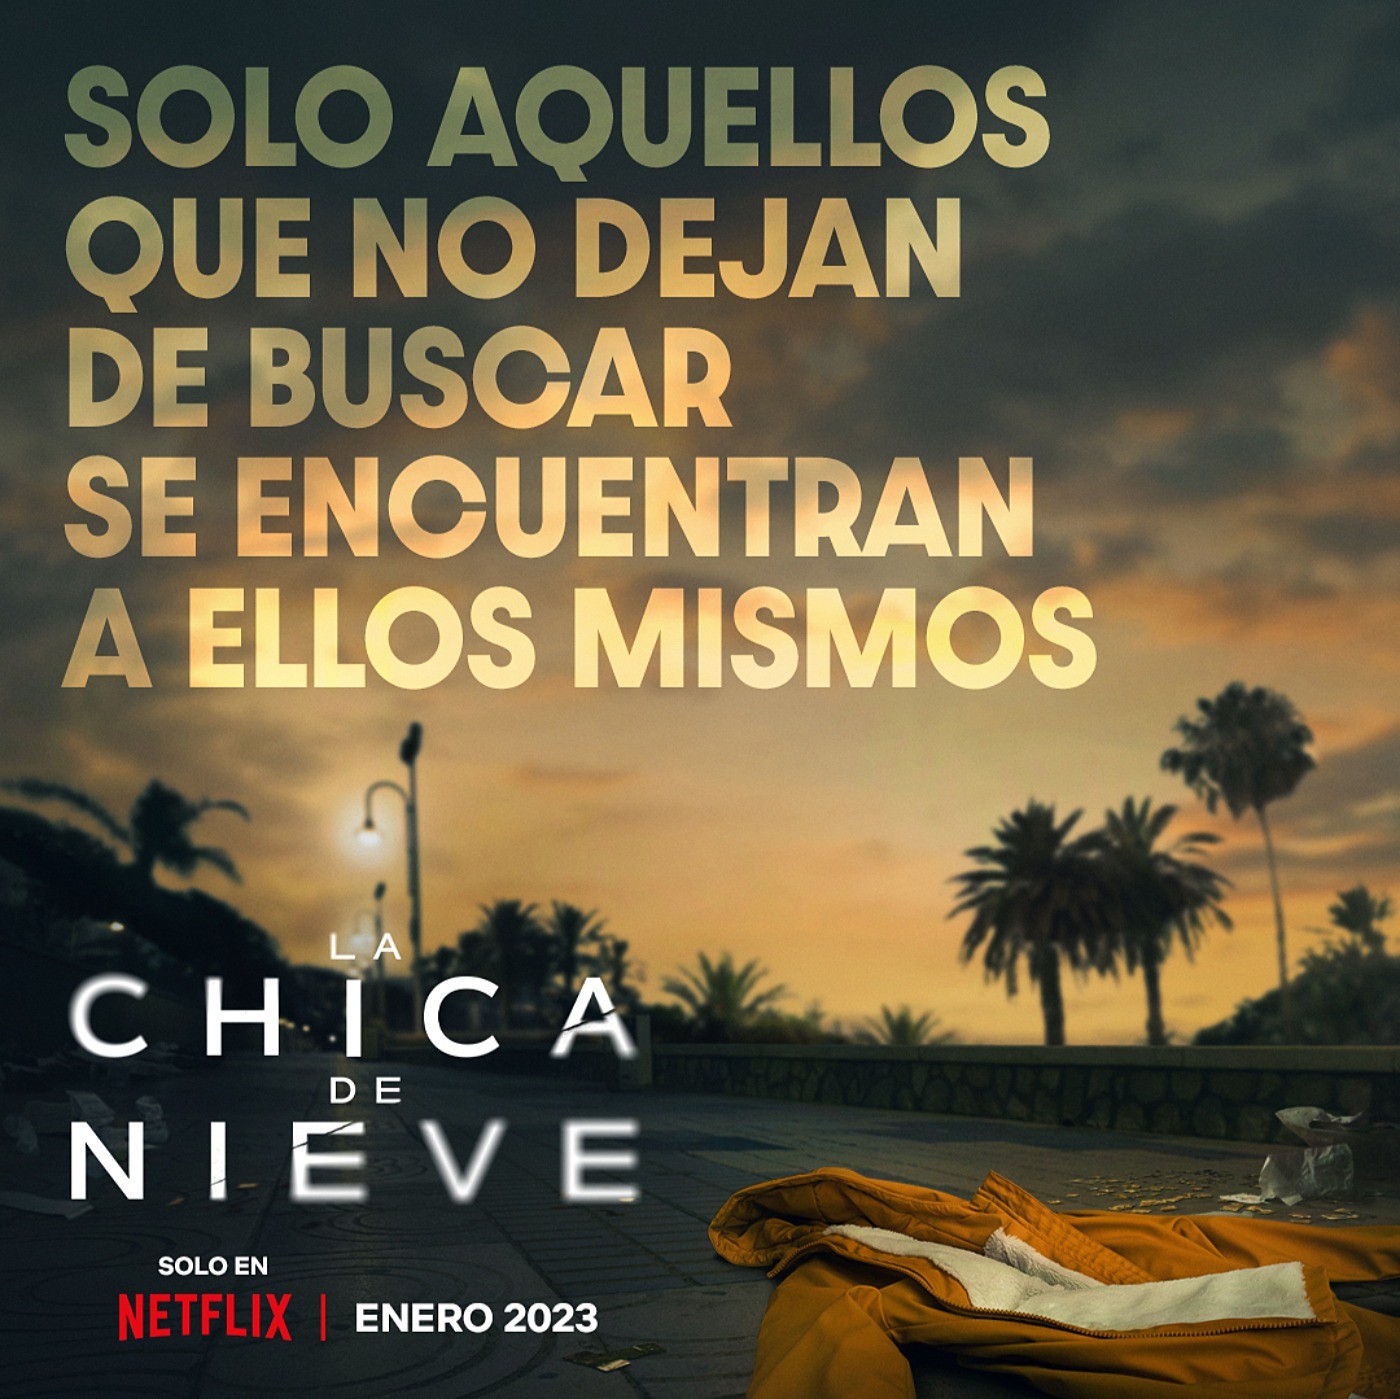 La Chica de Nieve, tráiler oficial de la nueva serie de Netflix